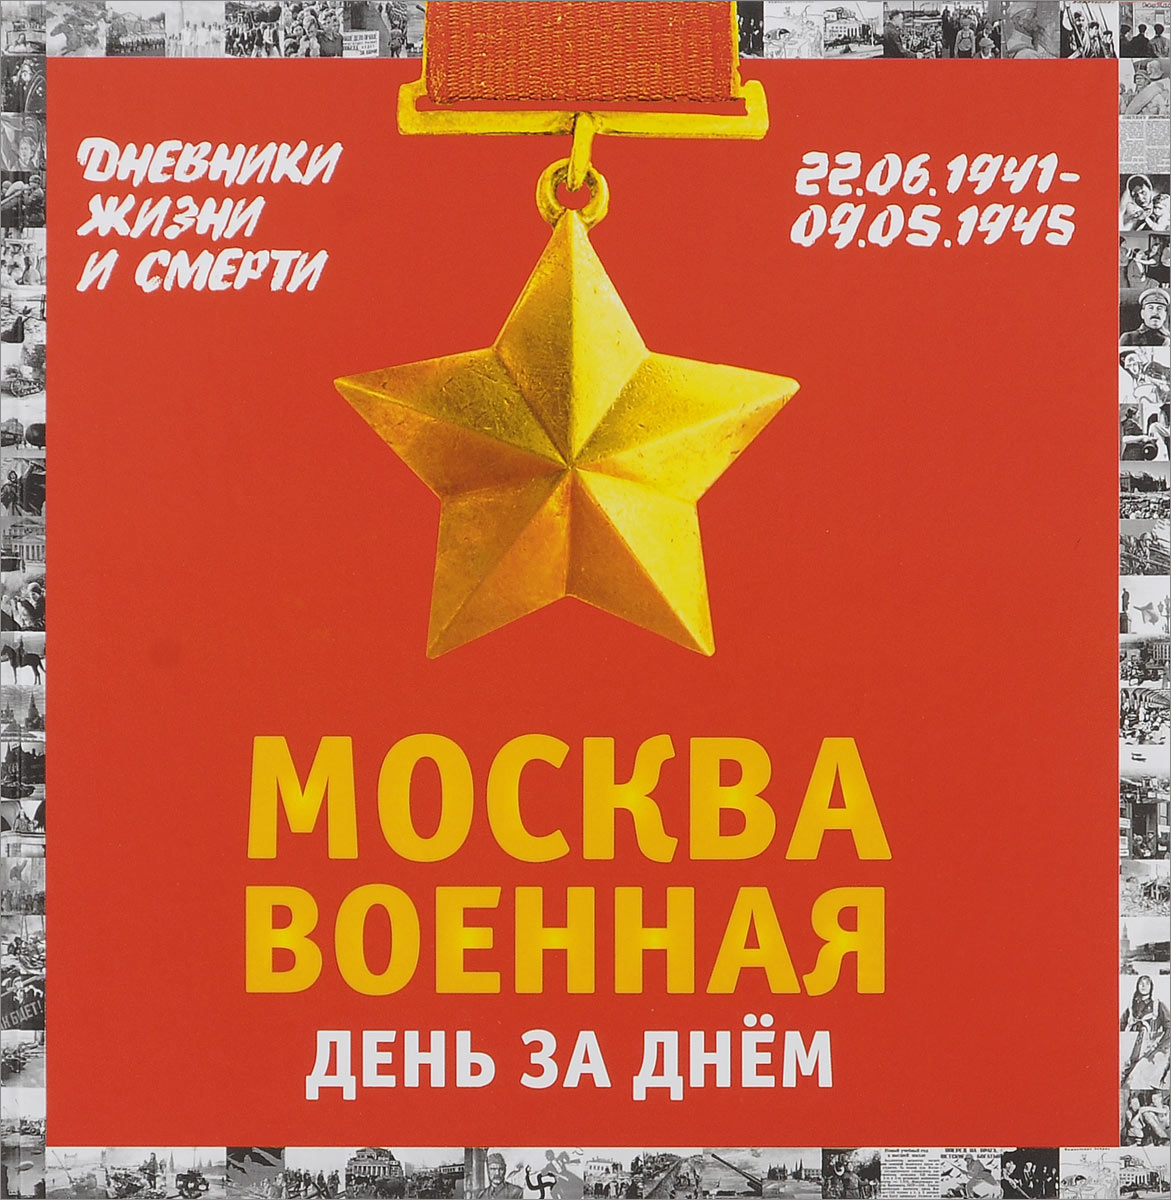 Москва военная день за днем. Дневники жизни и смерти. 22 июня 1941— 9 мая 1945